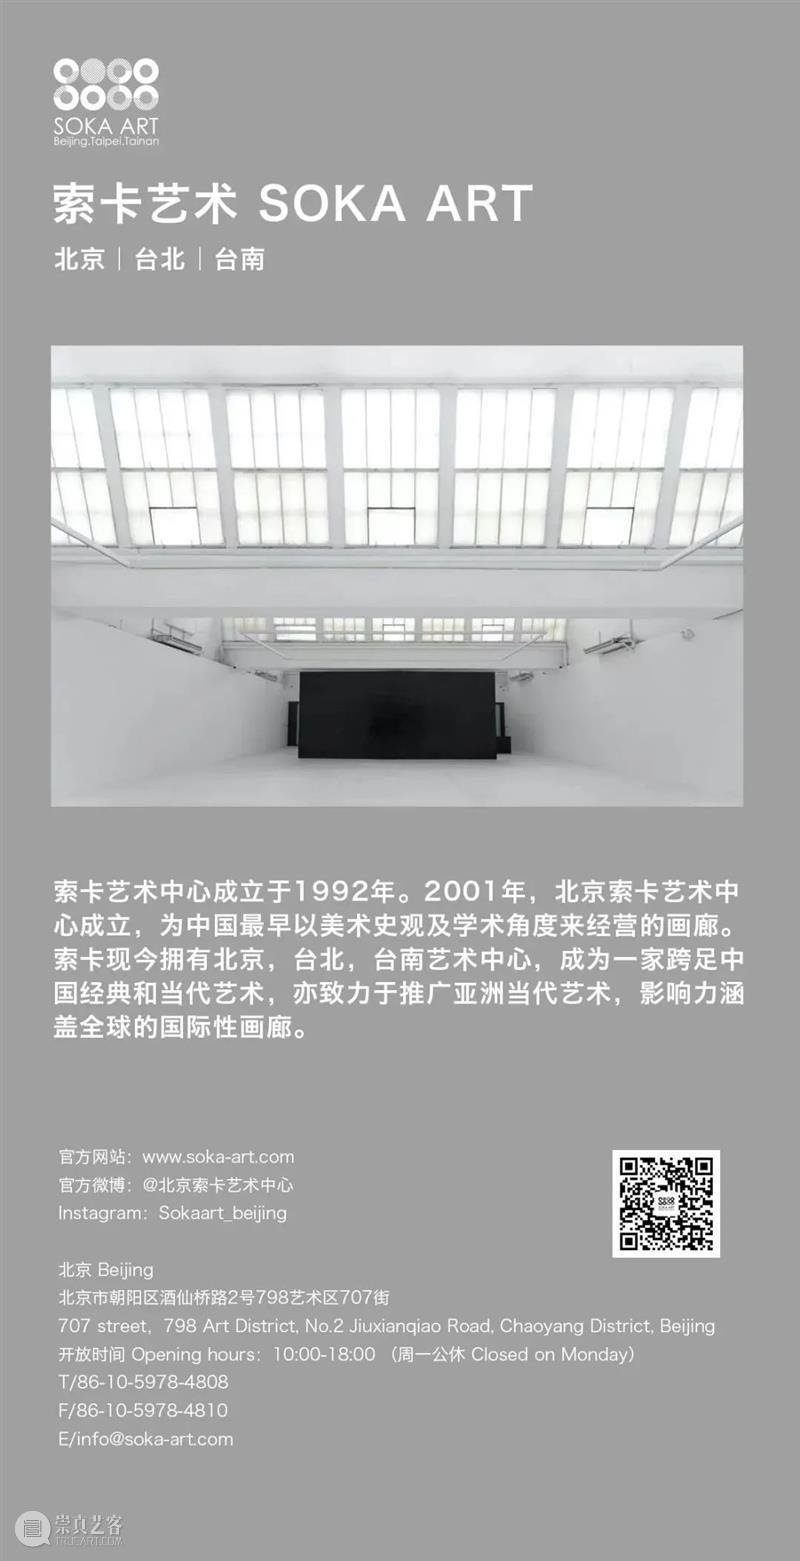 艺博会 | 2023年巴塞尔艺术展香港展会(ABHK 2023) | 展位1B10 崇真艺客